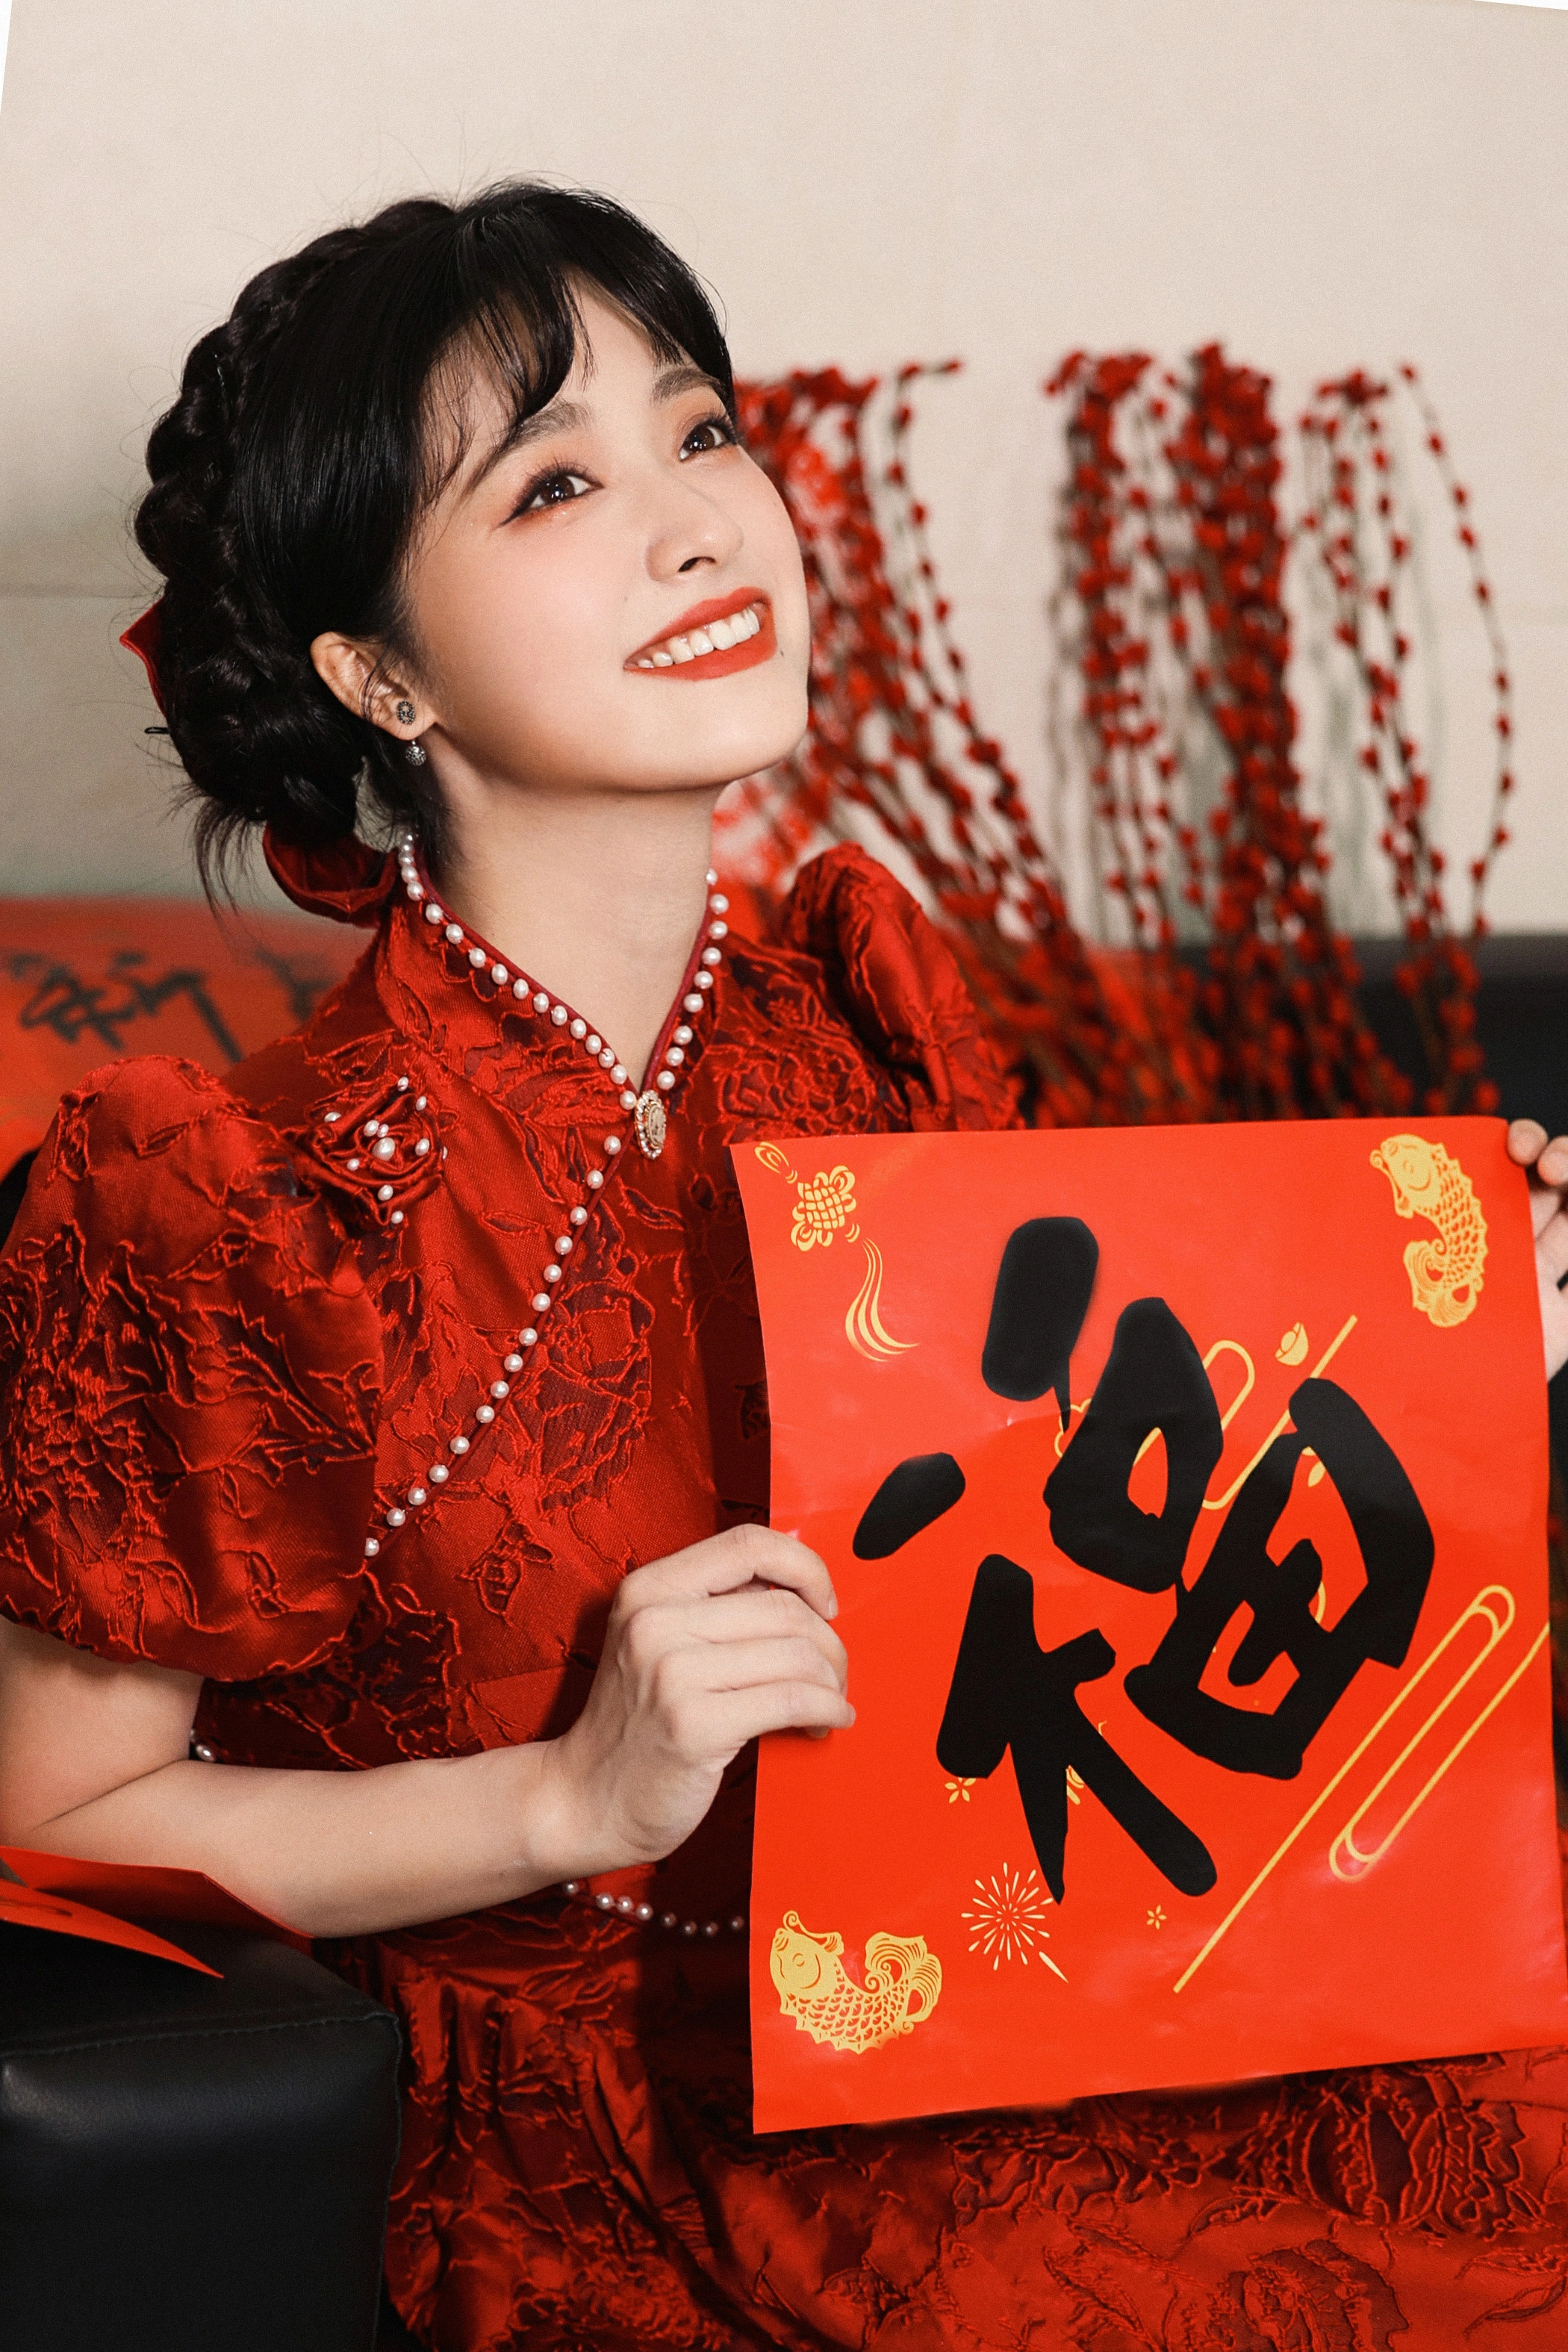 沈月贺新春 红色蕾丝旗袍加盘发造型太美了吧！,1 (1)